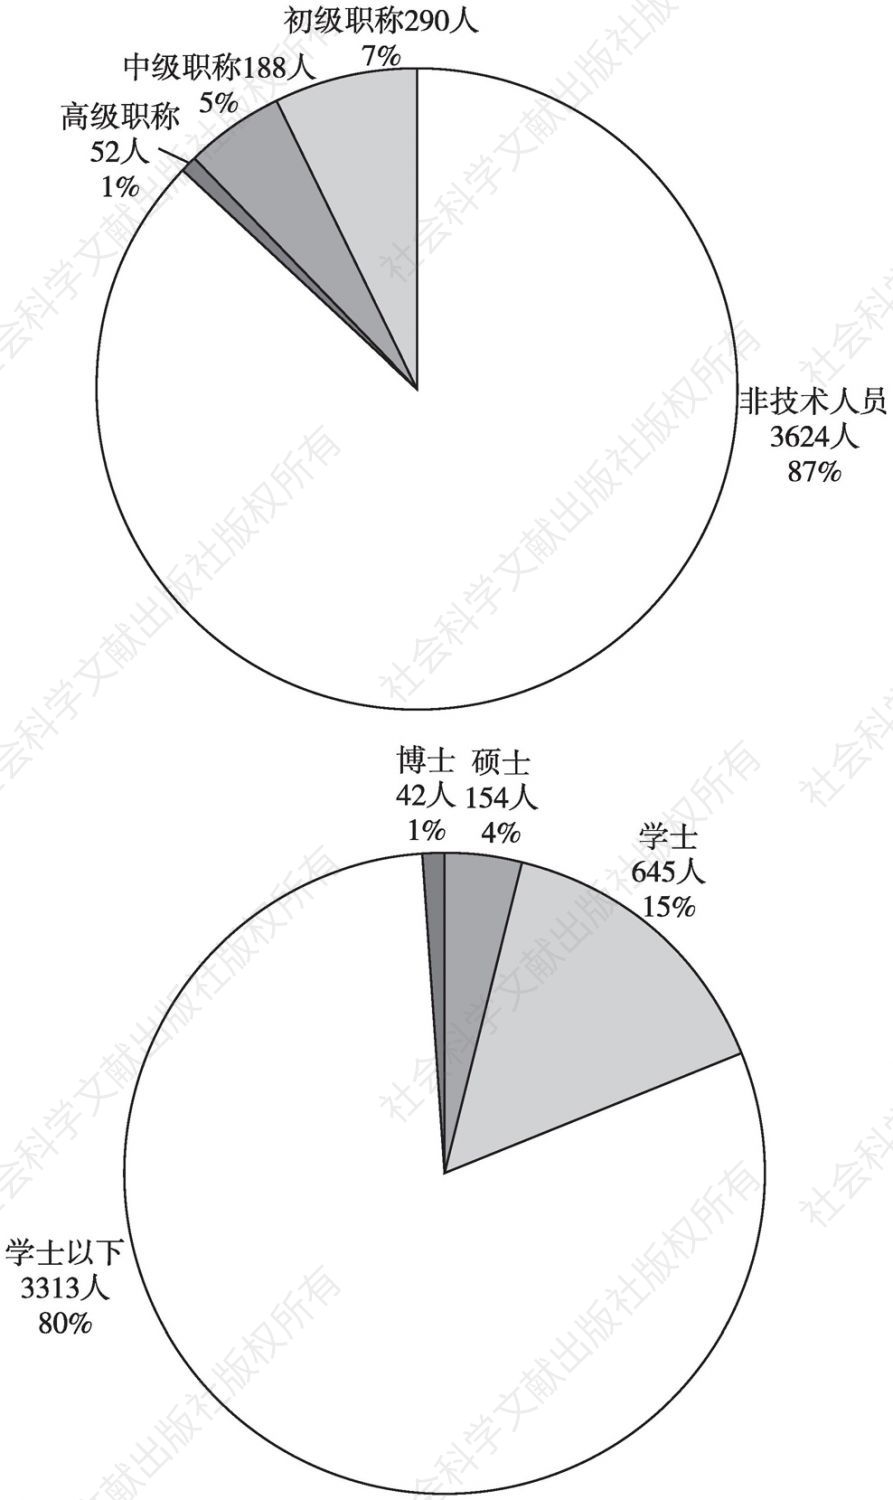 图4 安徽省42家医疗器械生产企业人员结构分布情况